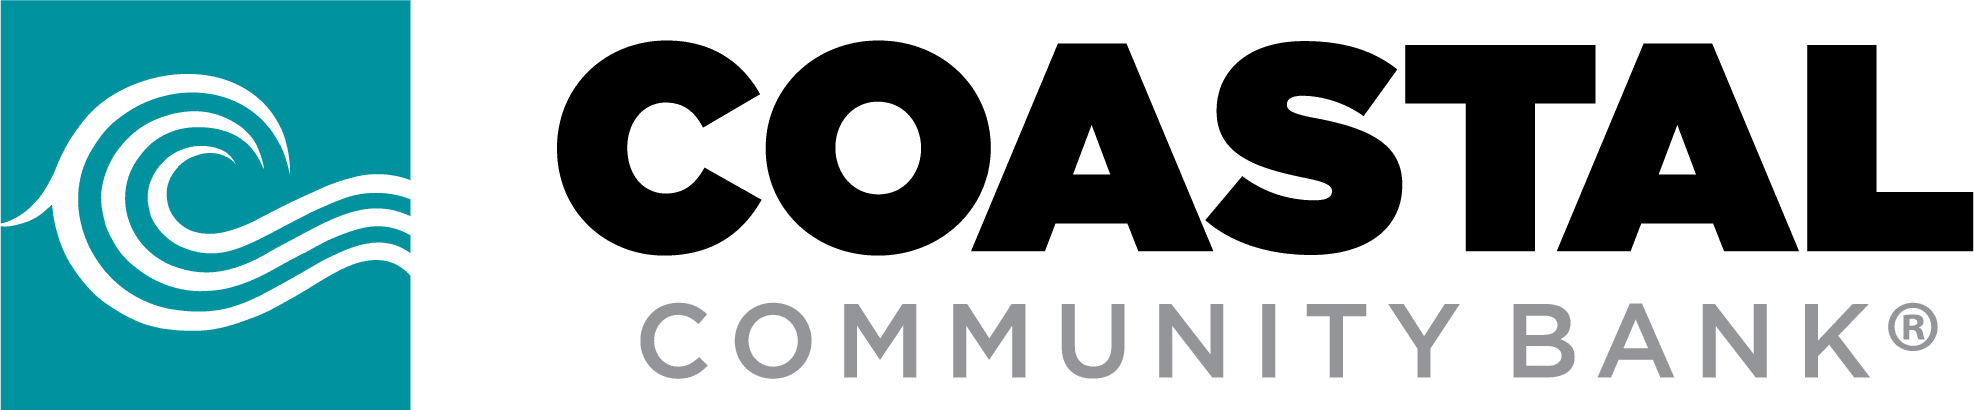 Coastal Community Bank logo